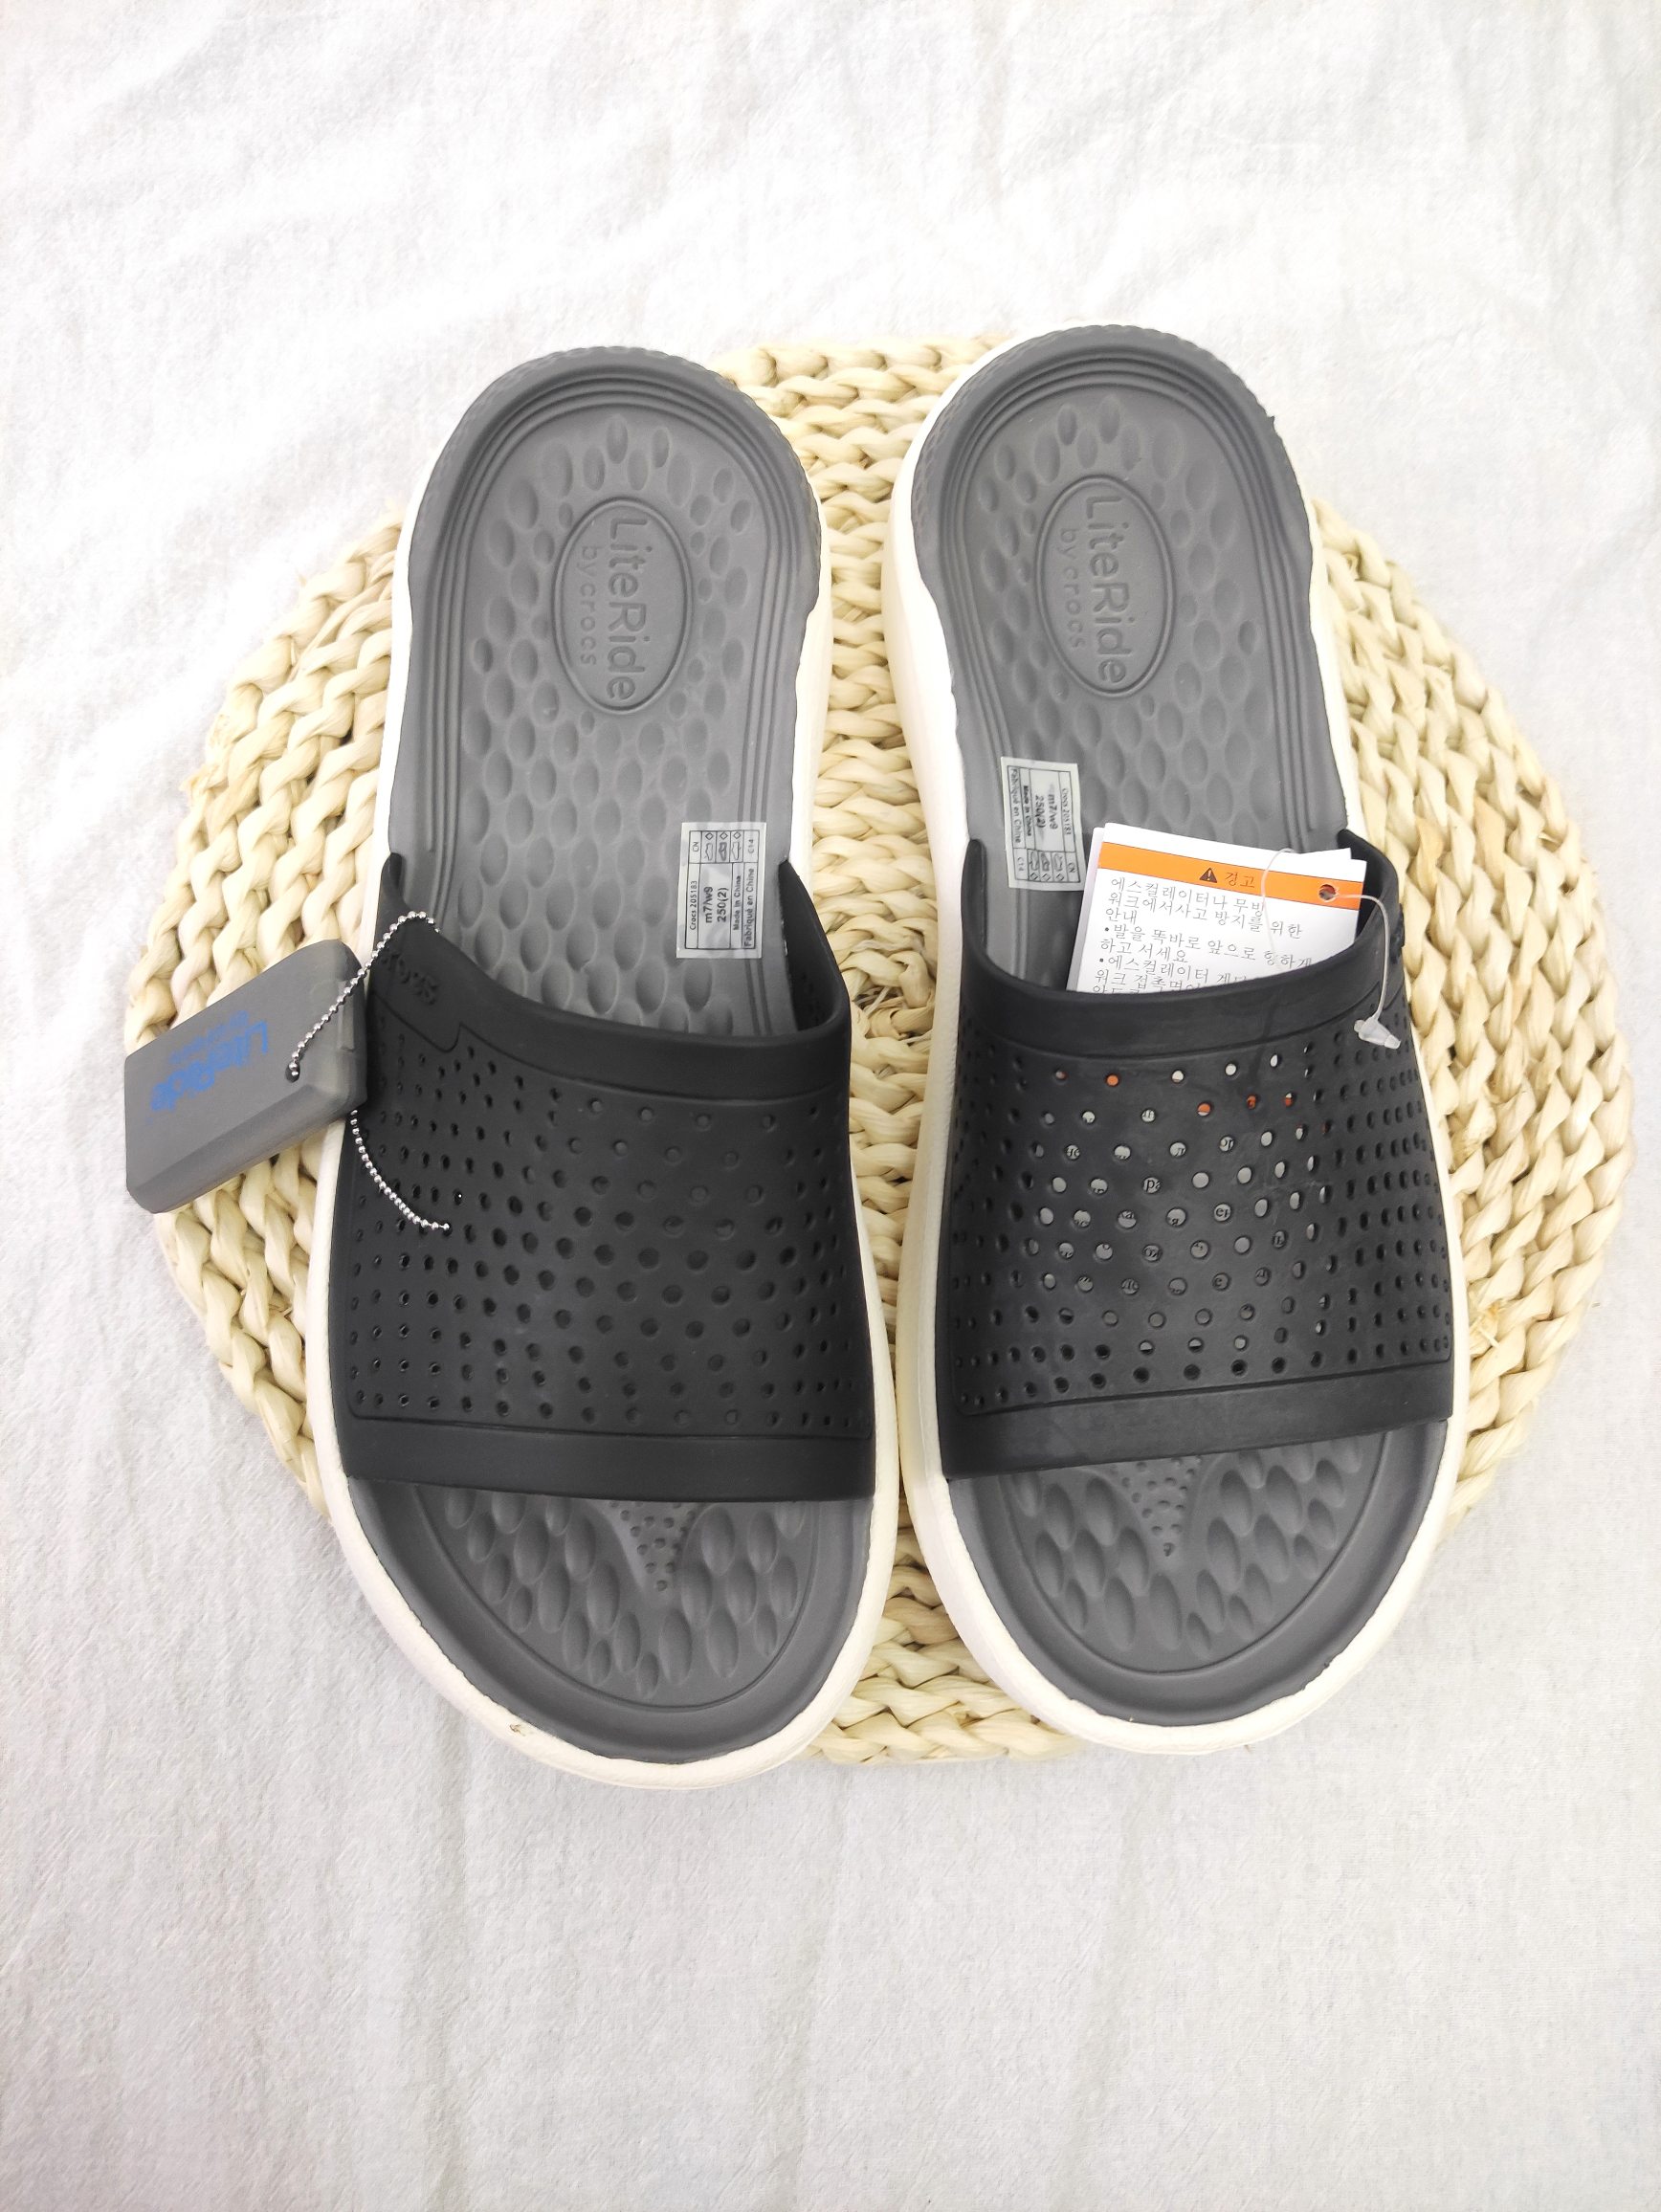 SAYYAS Men's and Women's LiteRide Slide Sandals Grey